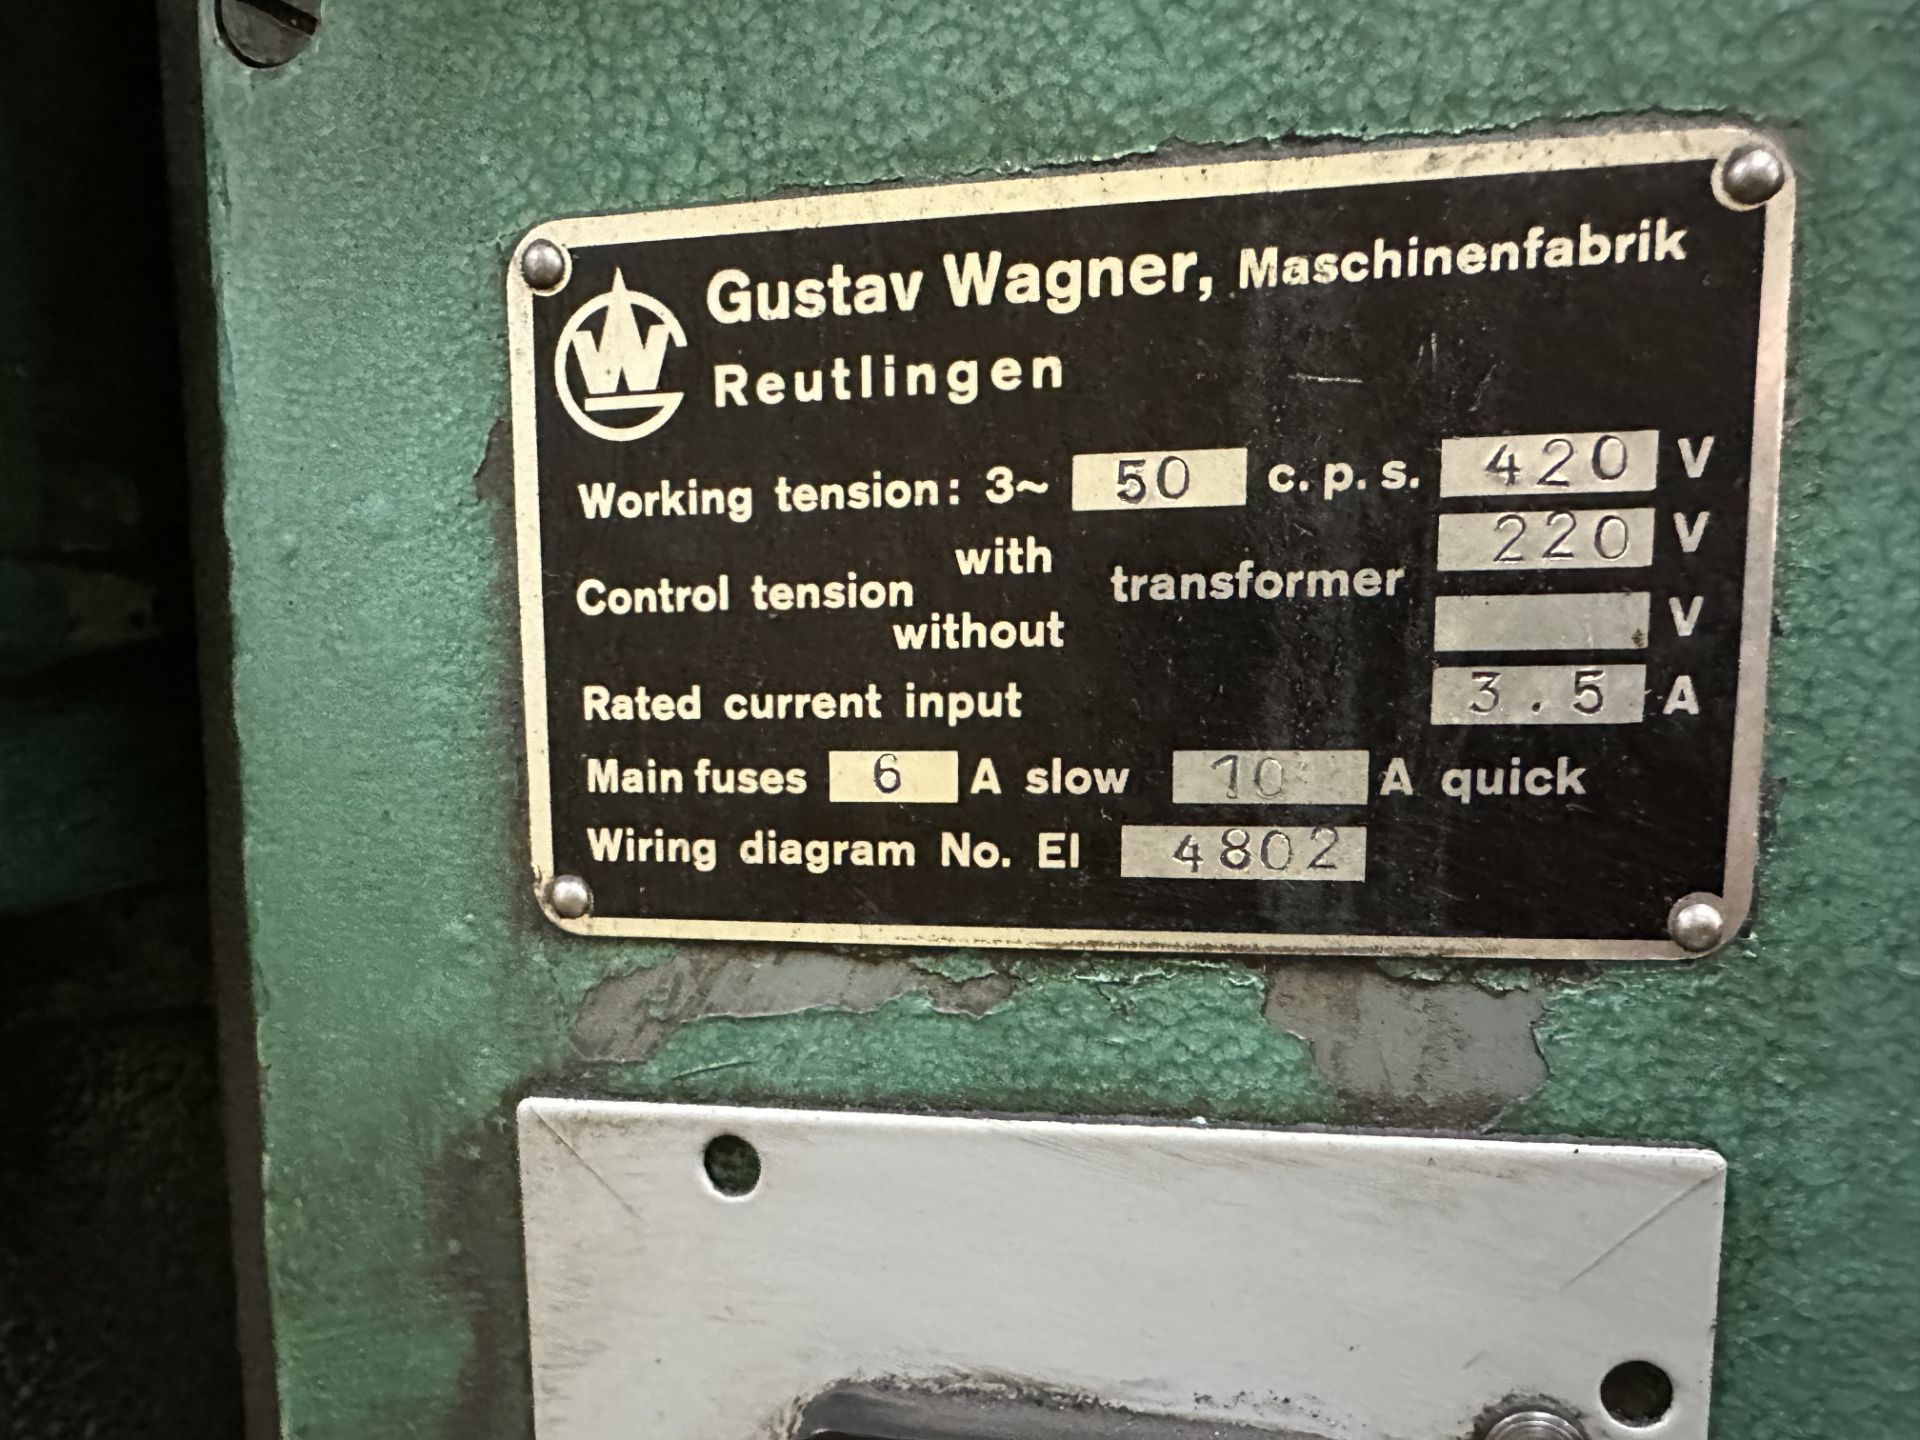 Gustav Wagner segmental saw grinder - Image 4 of 4